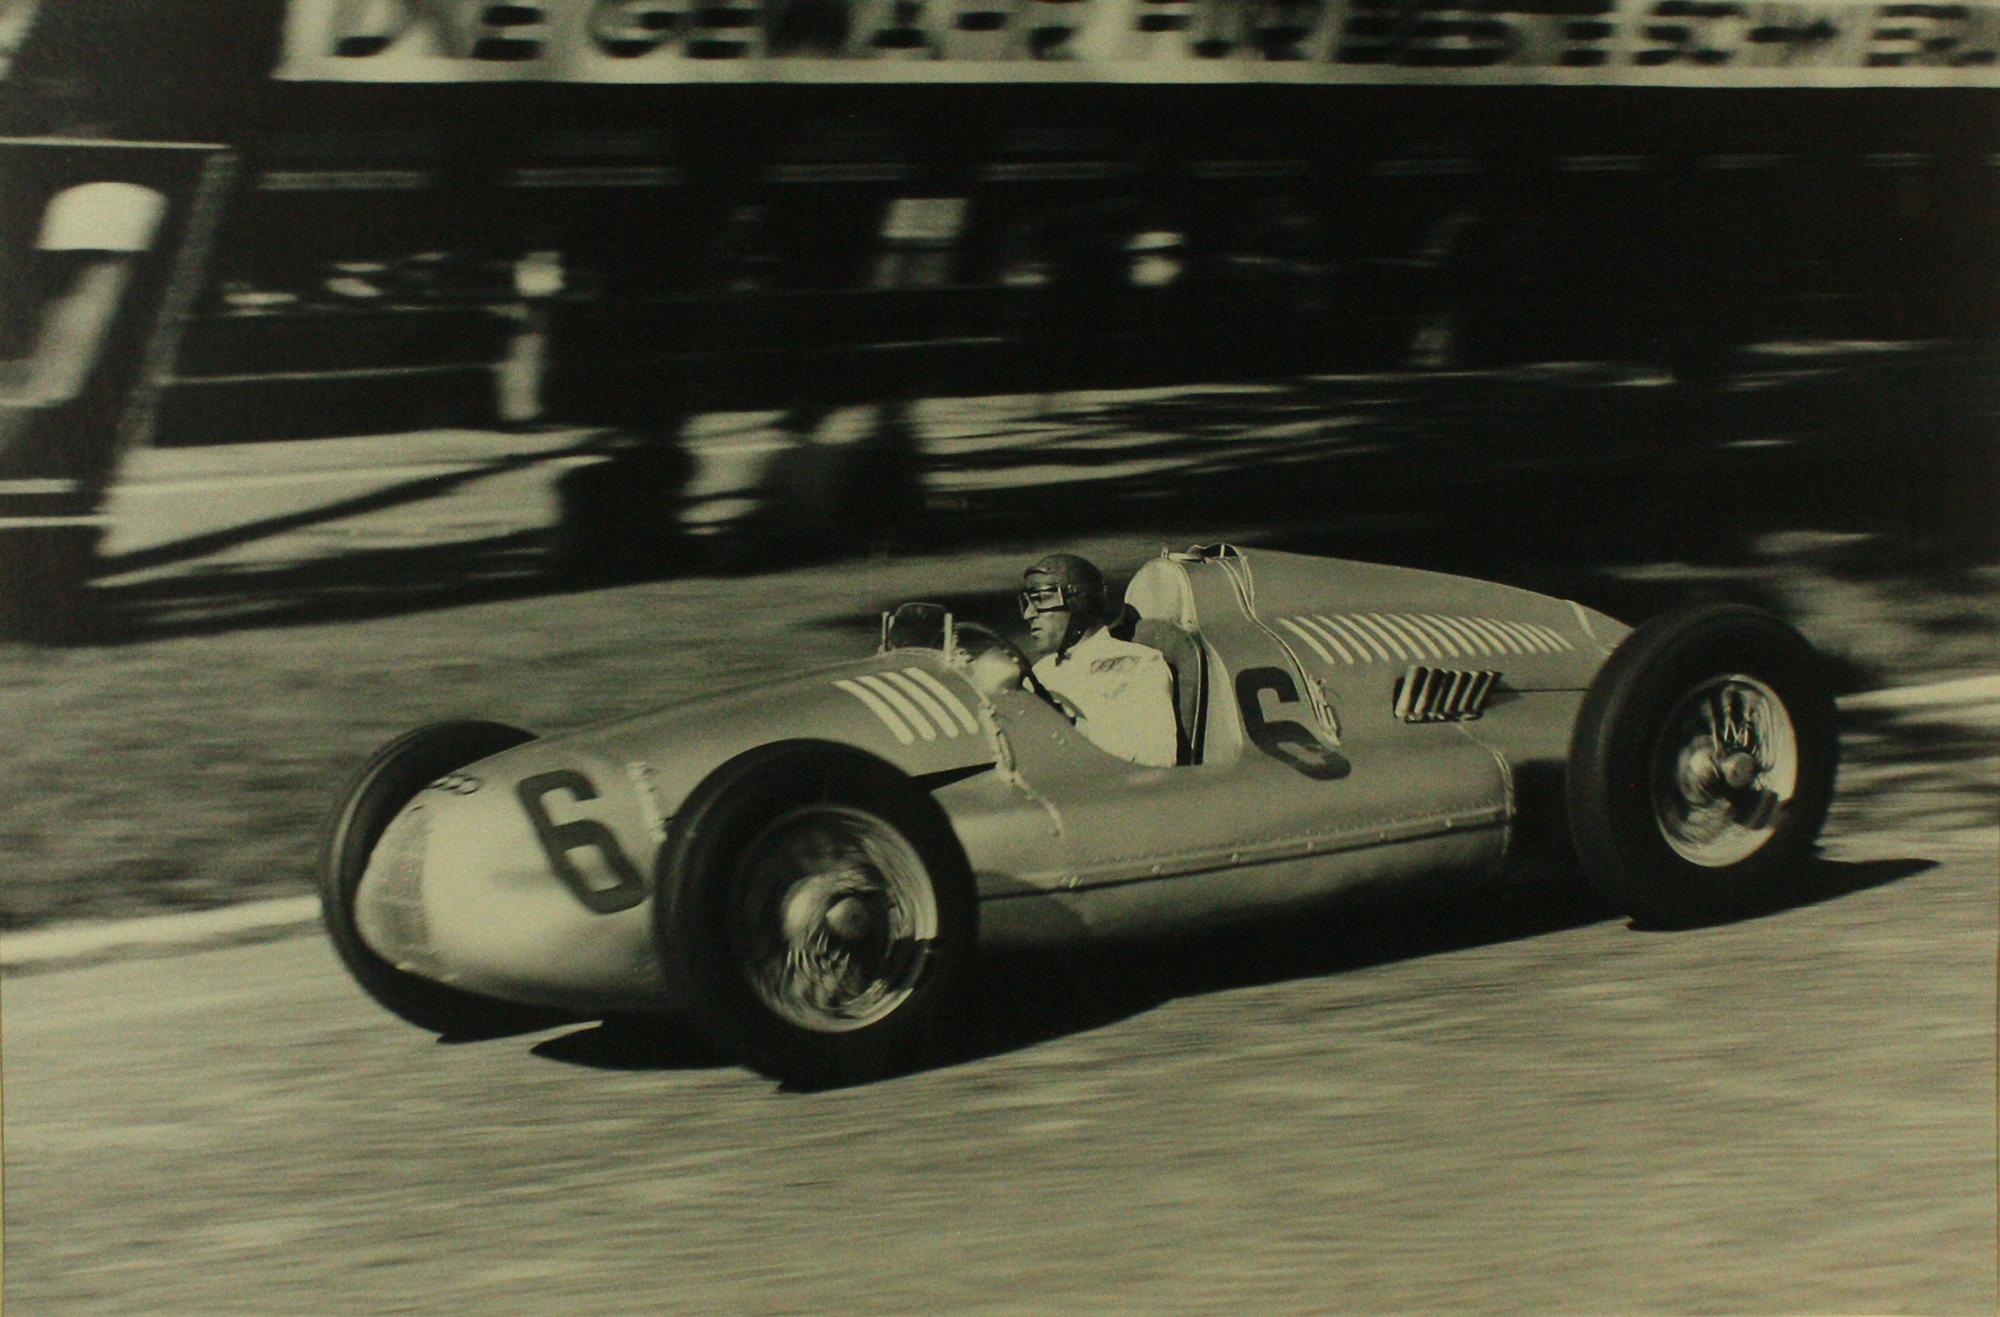 Tazio Nuvolari Auto Union D Type Swiss Grand Prix 1938 - Photograph by Unknown